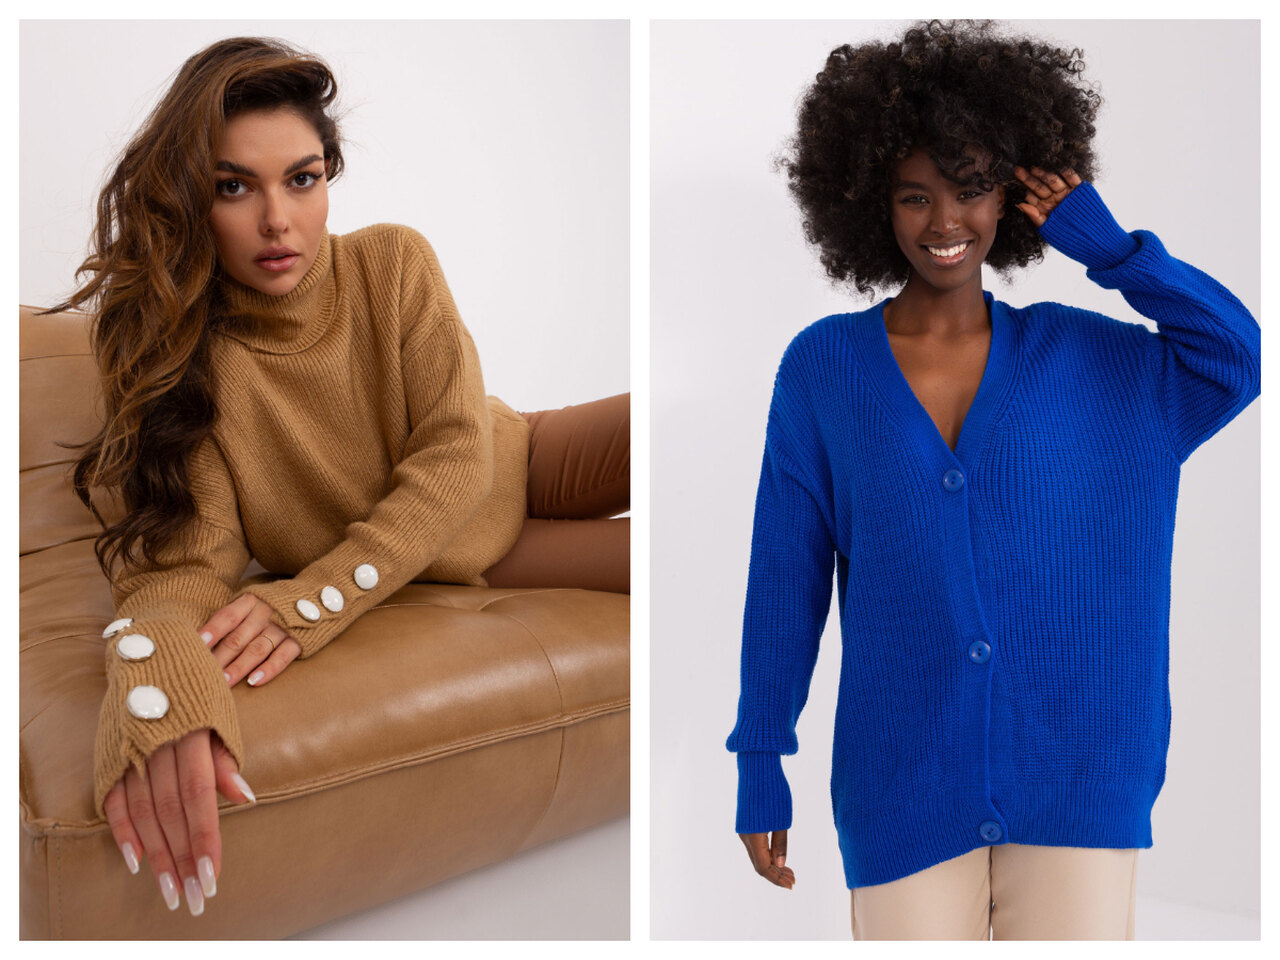 Sweterek damski – jaki będzie teraz nalepszym wyborem?